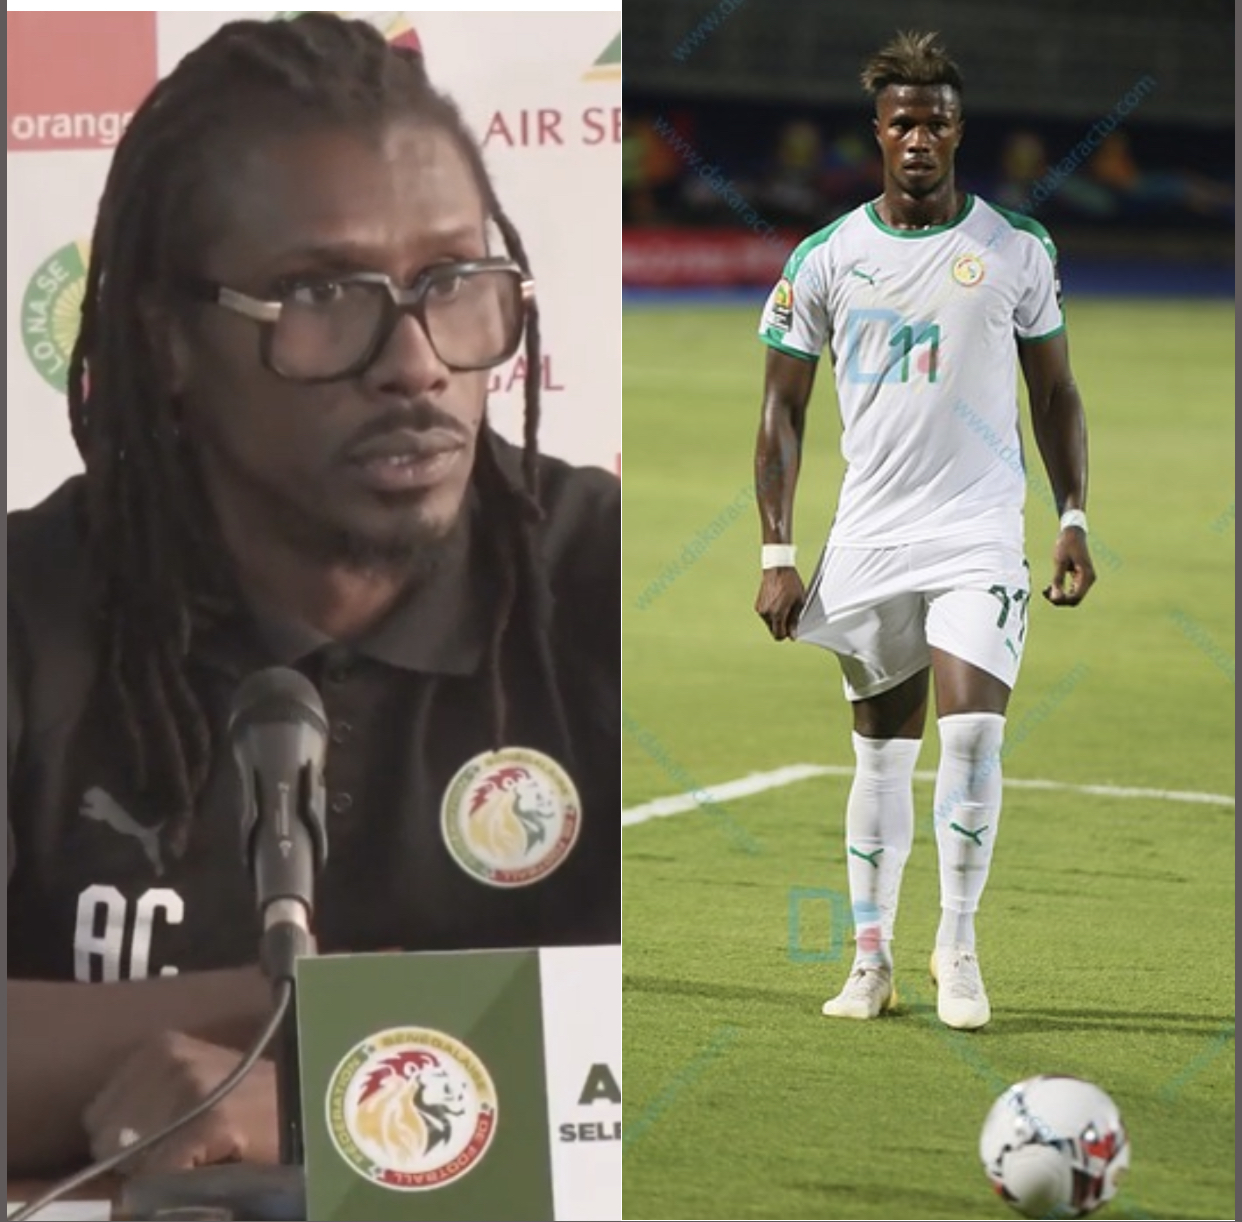 Éliminatoires CAN 2021 : Diao Keïta Baldé absent du groupe pour des raisons familiales. (Aliou Cissé)